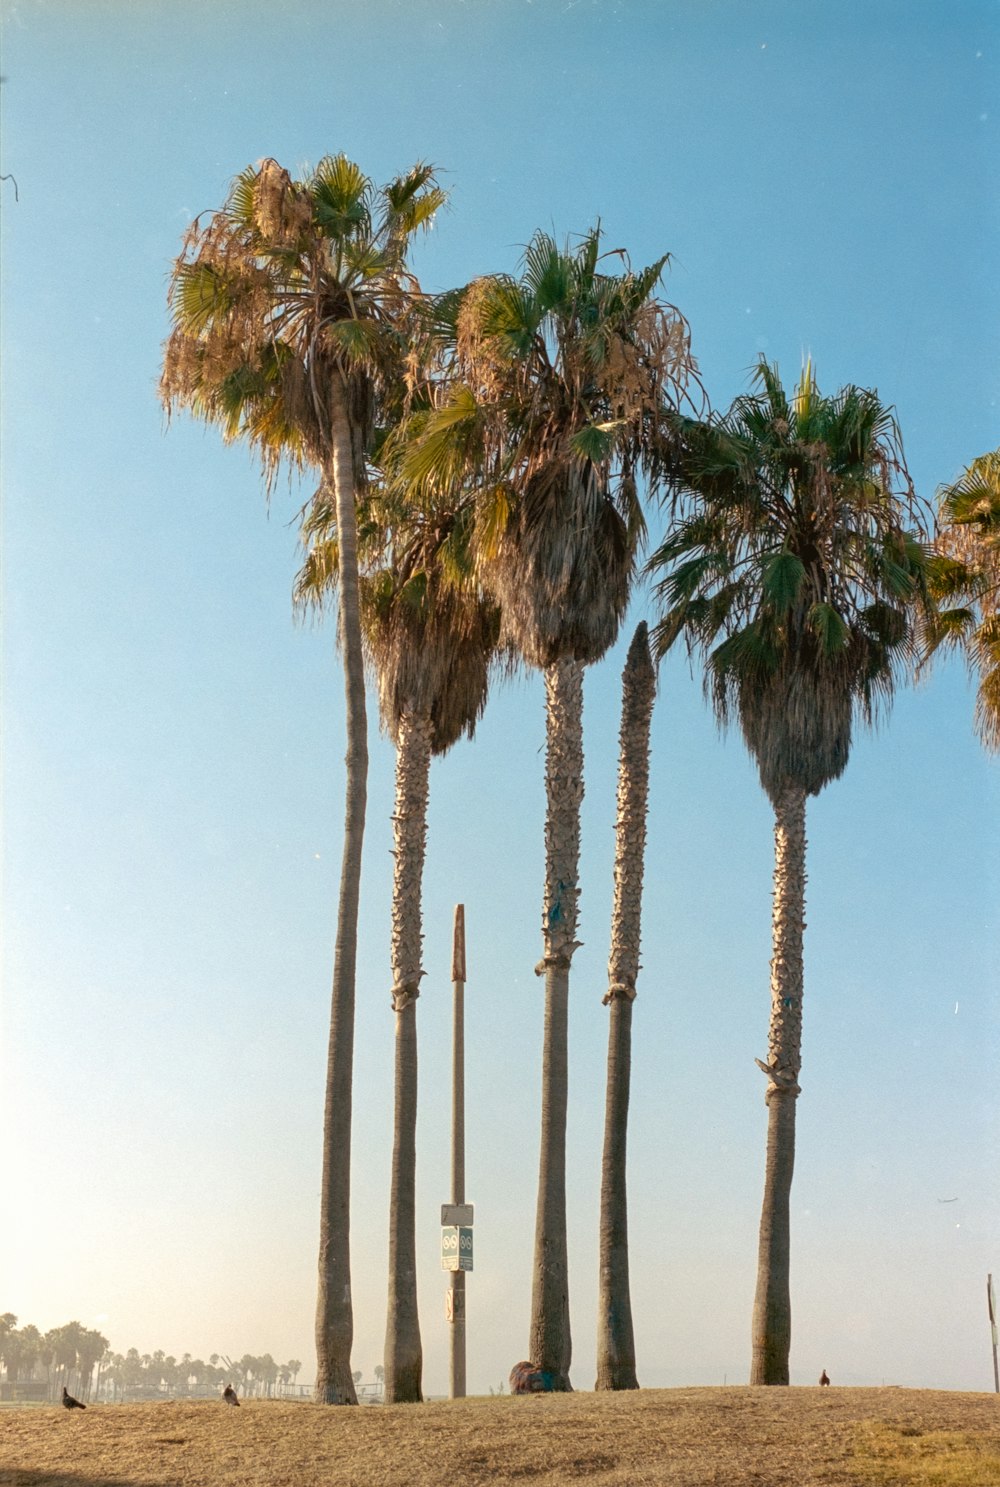 palmeiras sob o céu azul durante o dia